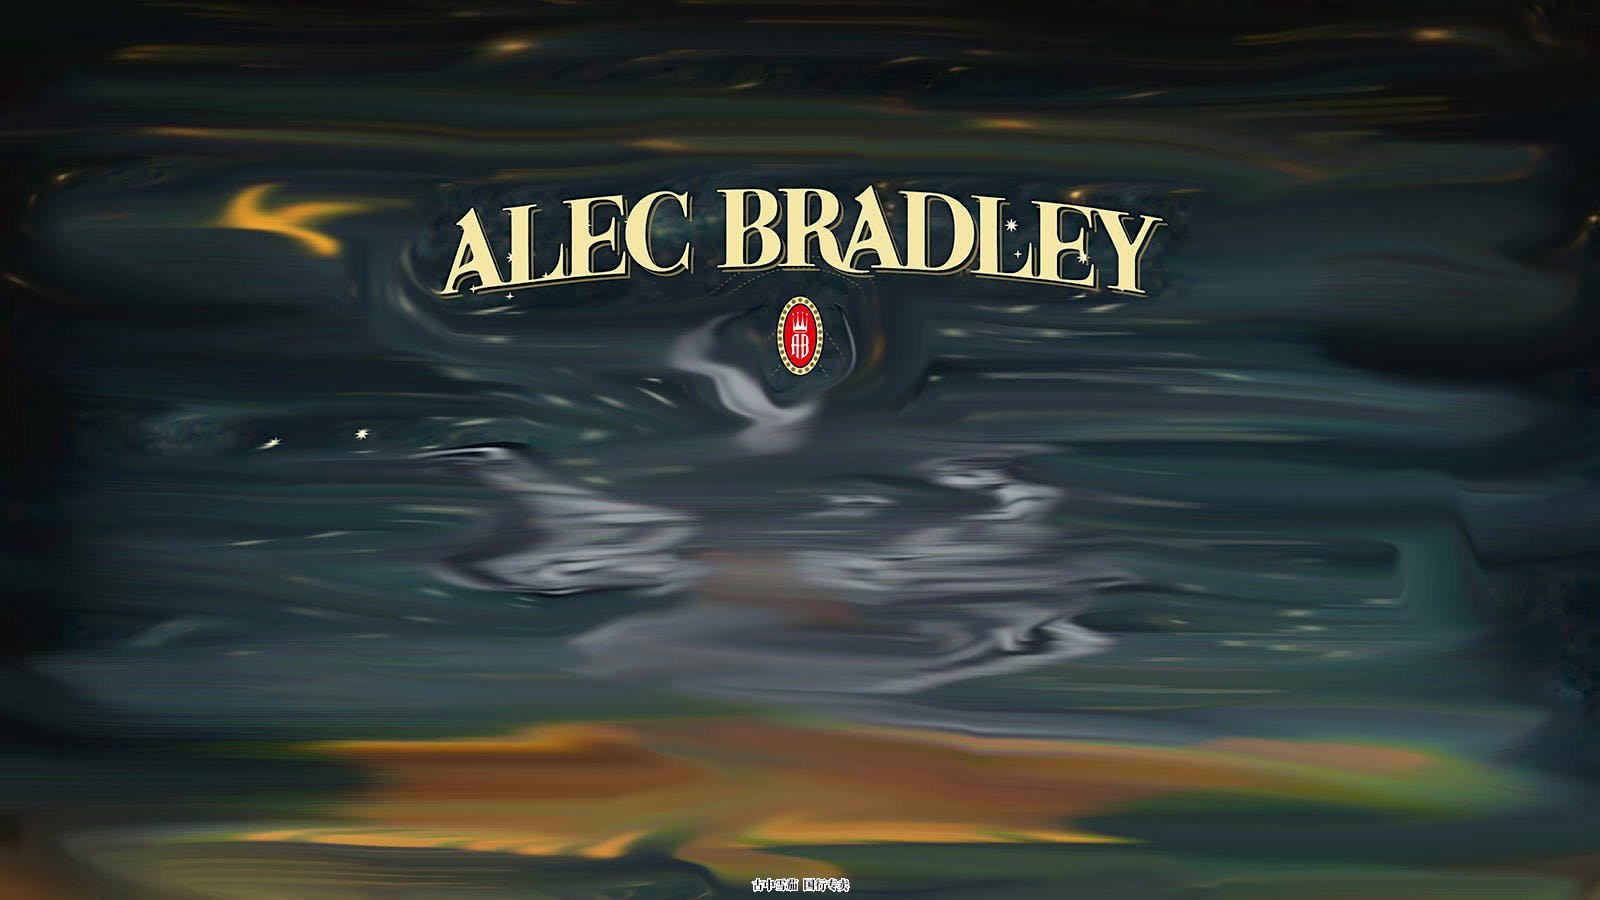 亚历克·布拉德利 (Alec Bradley) 调侃神秘雪茄